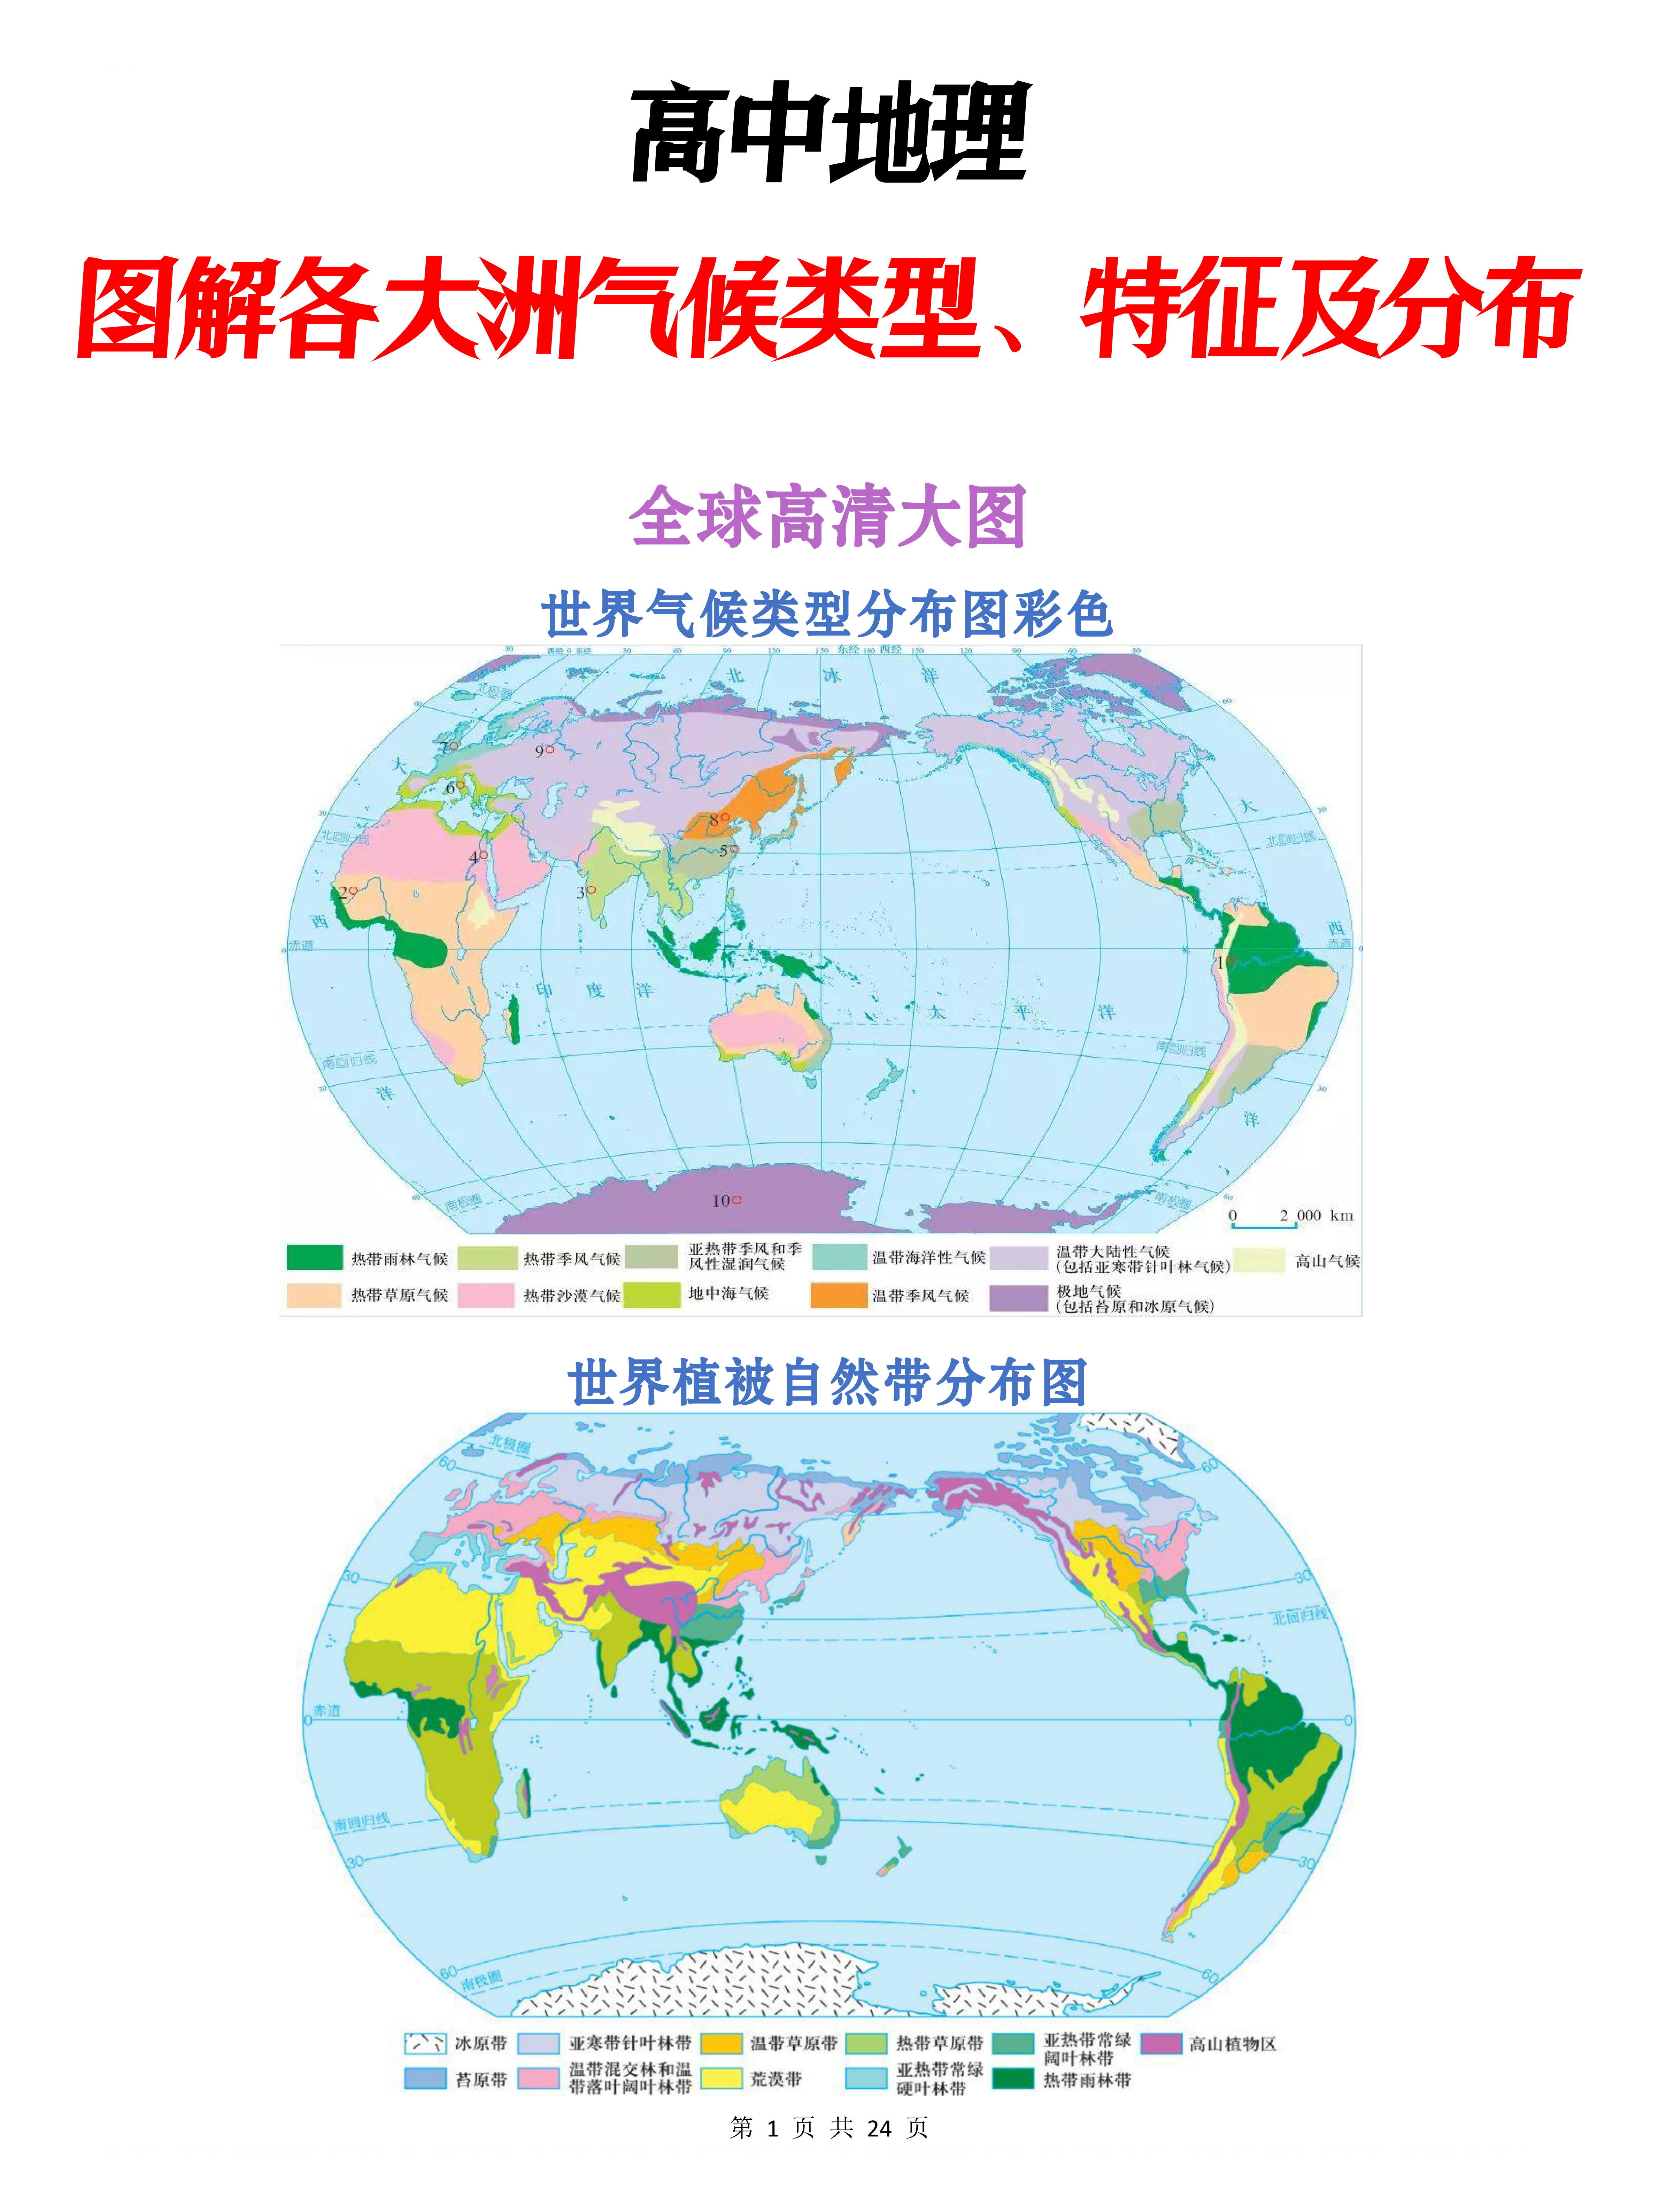 【高中地理】重点必背地图合集(24页):图解各大洲气候类型,特征及分布